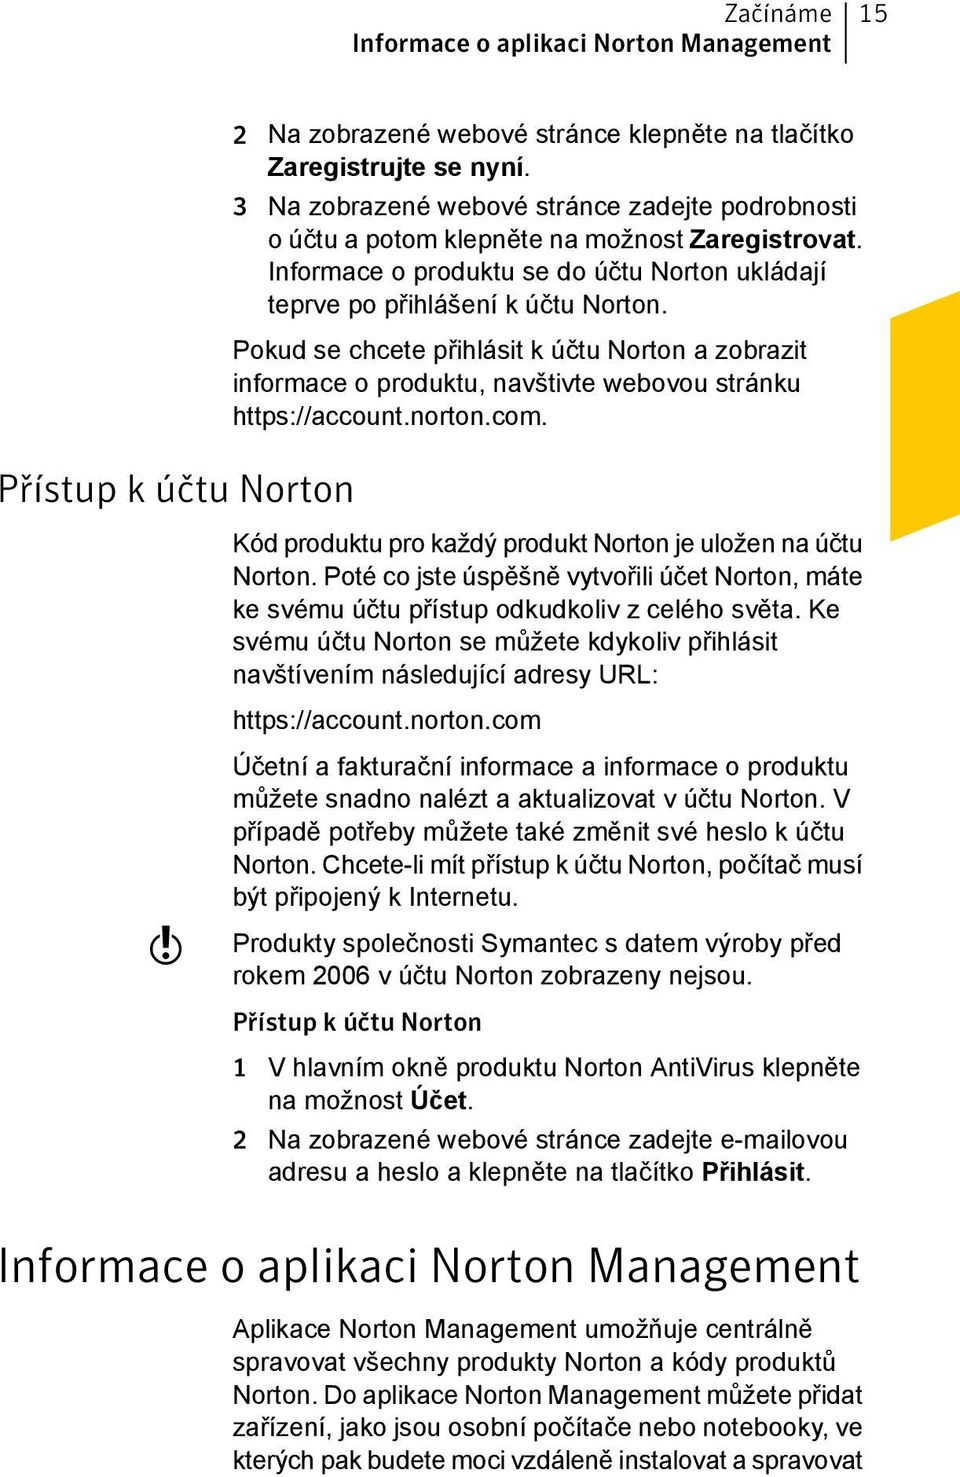 Pokud se chcete přihlásit k účtu Norton a zobrazit informace o produktu, navštivte webovou stránku https://account.norton.com. Kód produktu pro každý produkt Norton je uložen na účtu Norton.